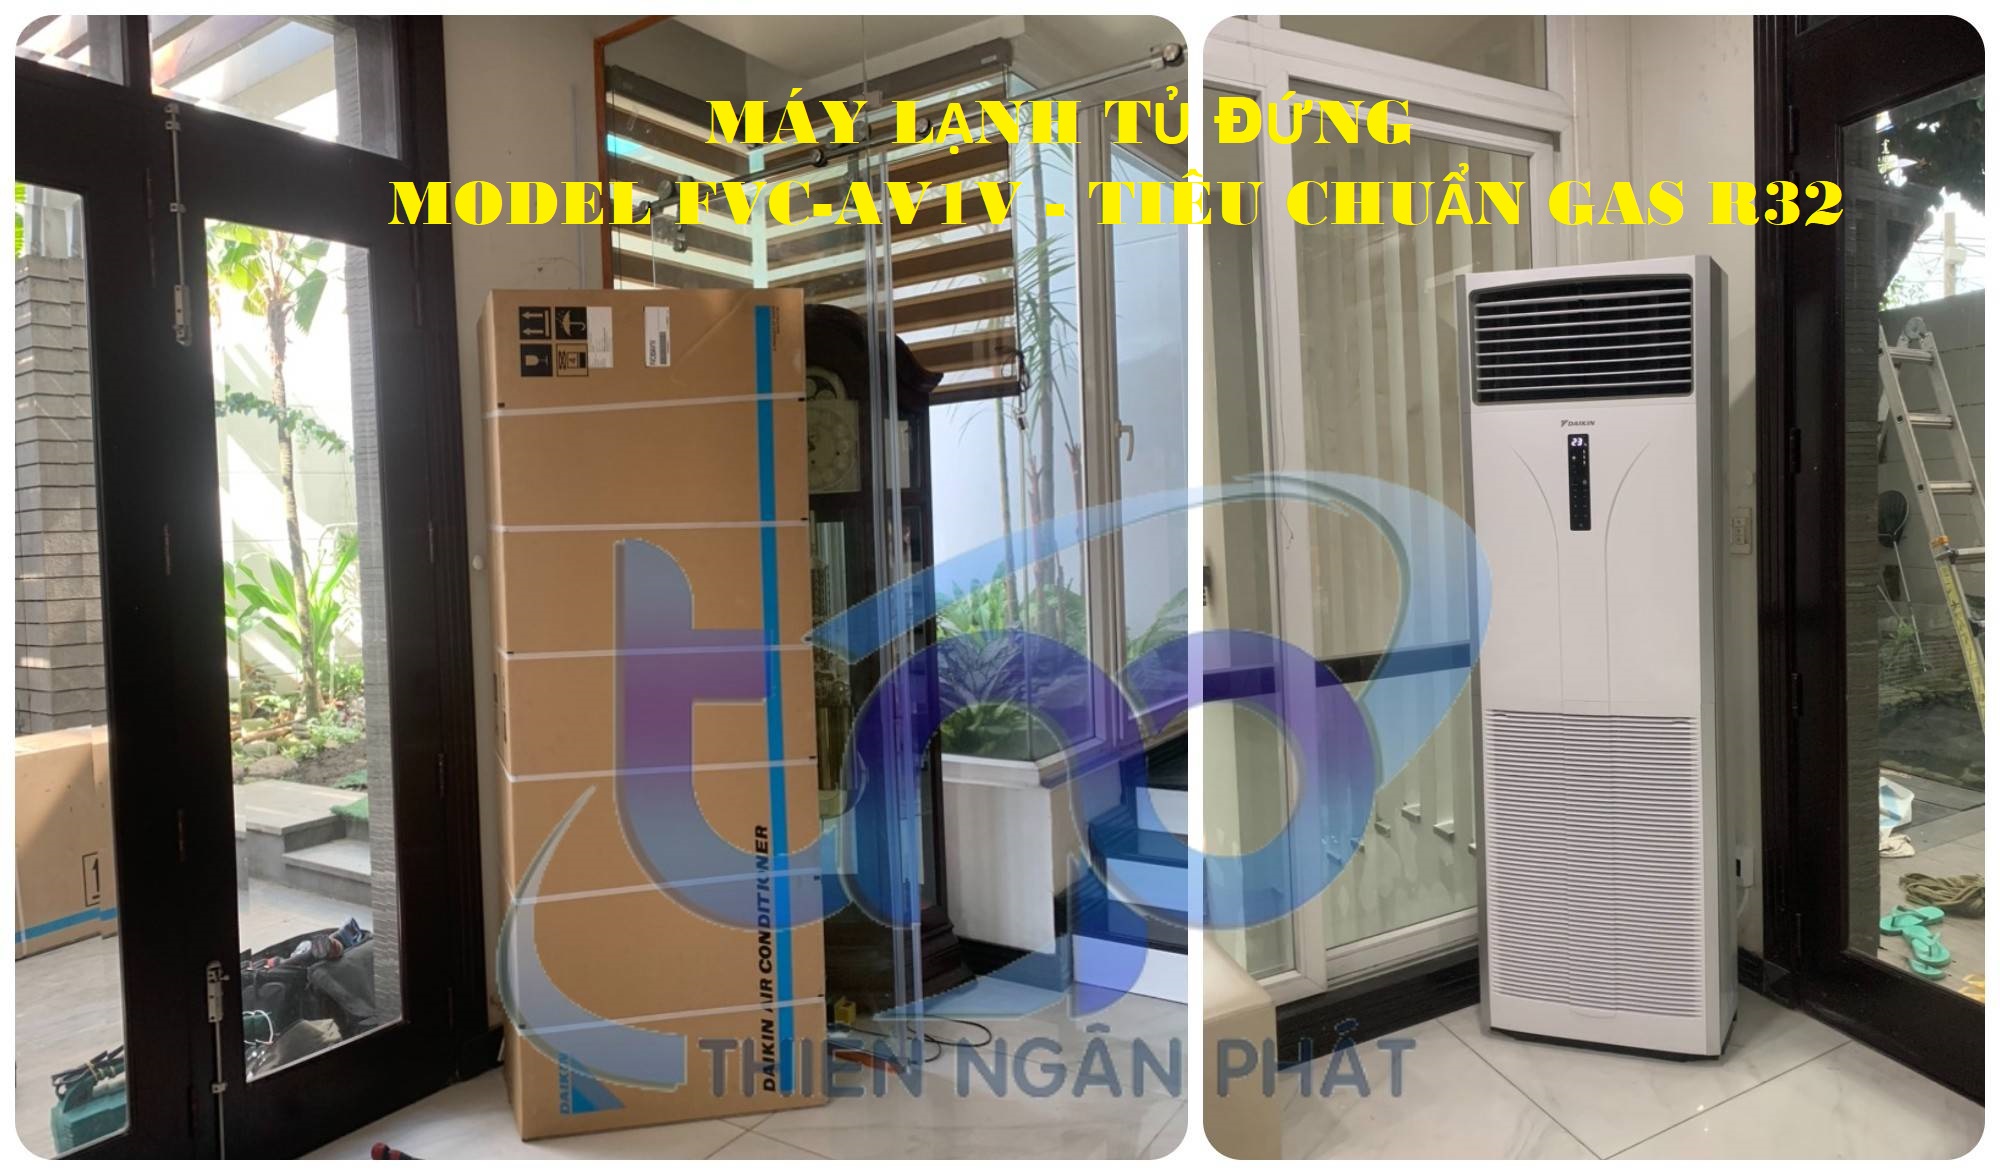 Hình ảnh máy lạnh tủ đứng FVC-AV1V tiêu chuẩn gas R32